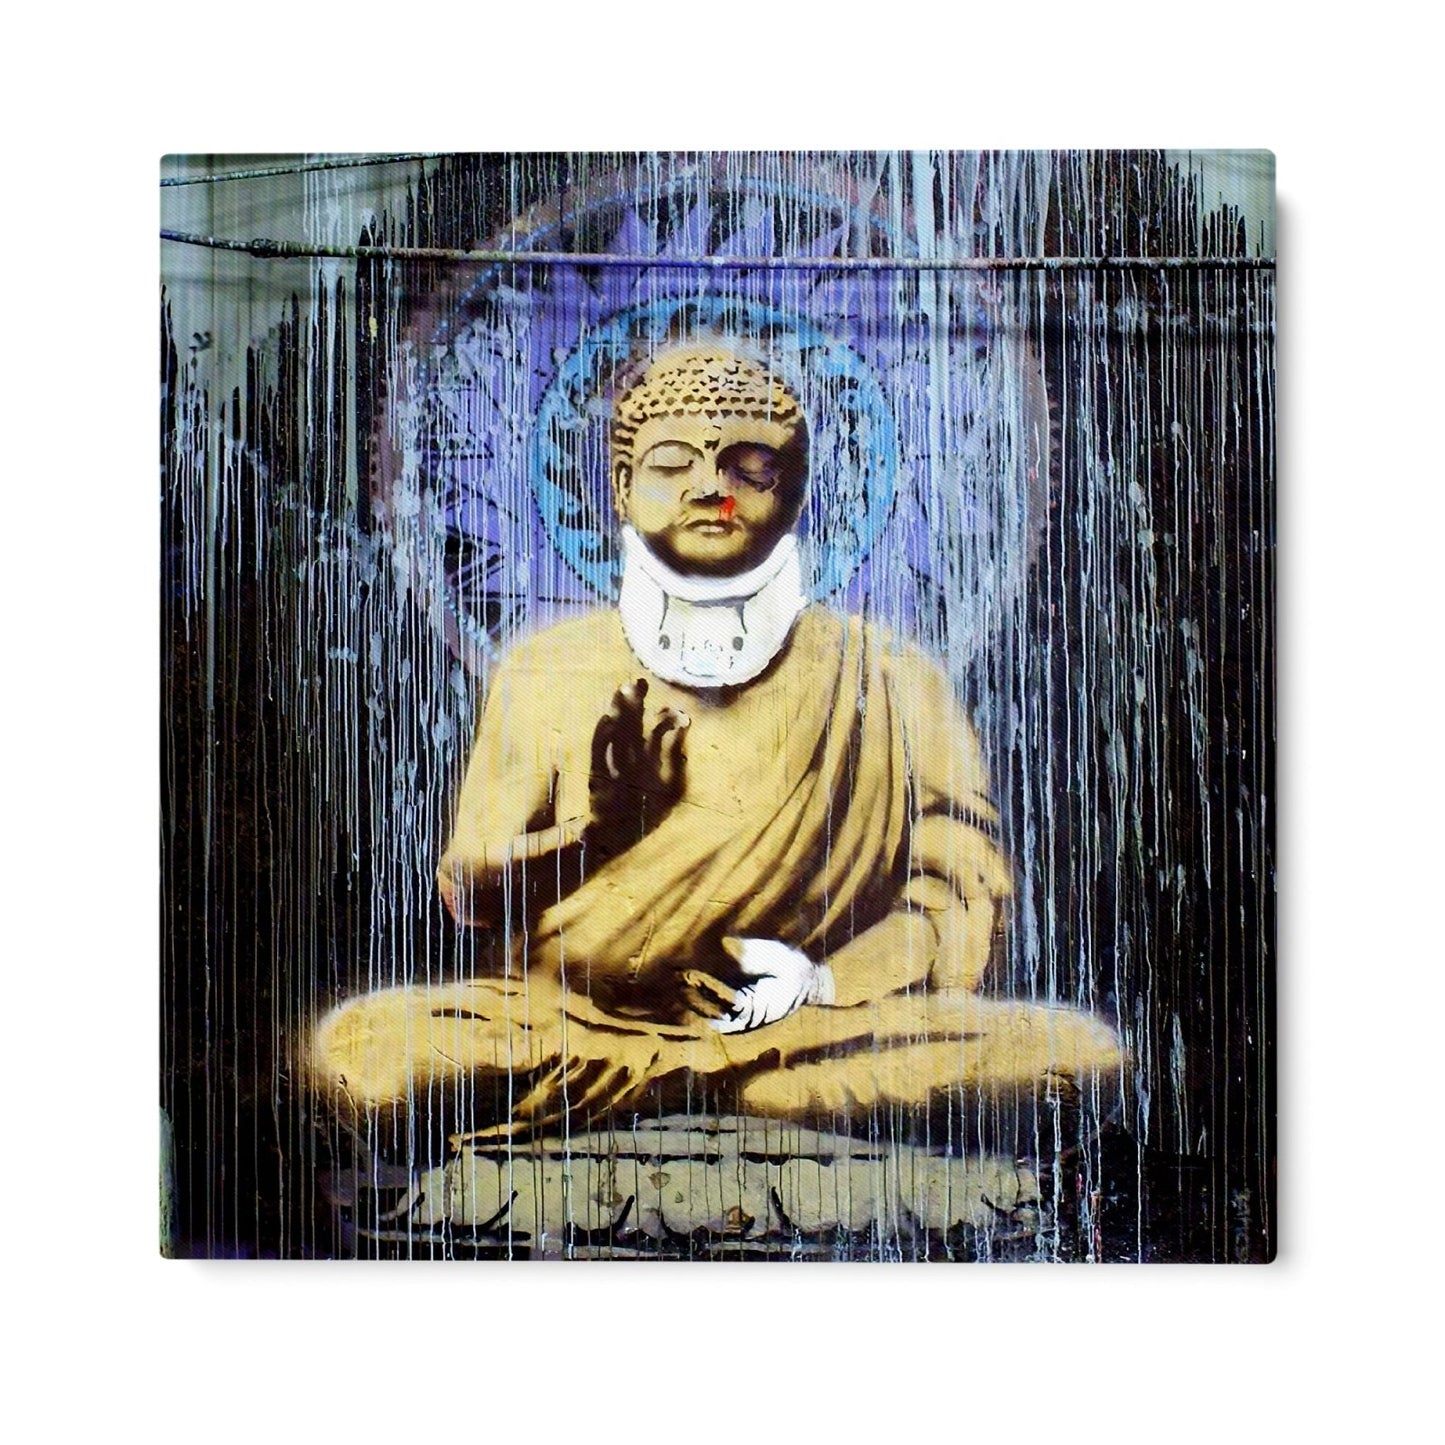 Skadad Buddha, Banksy